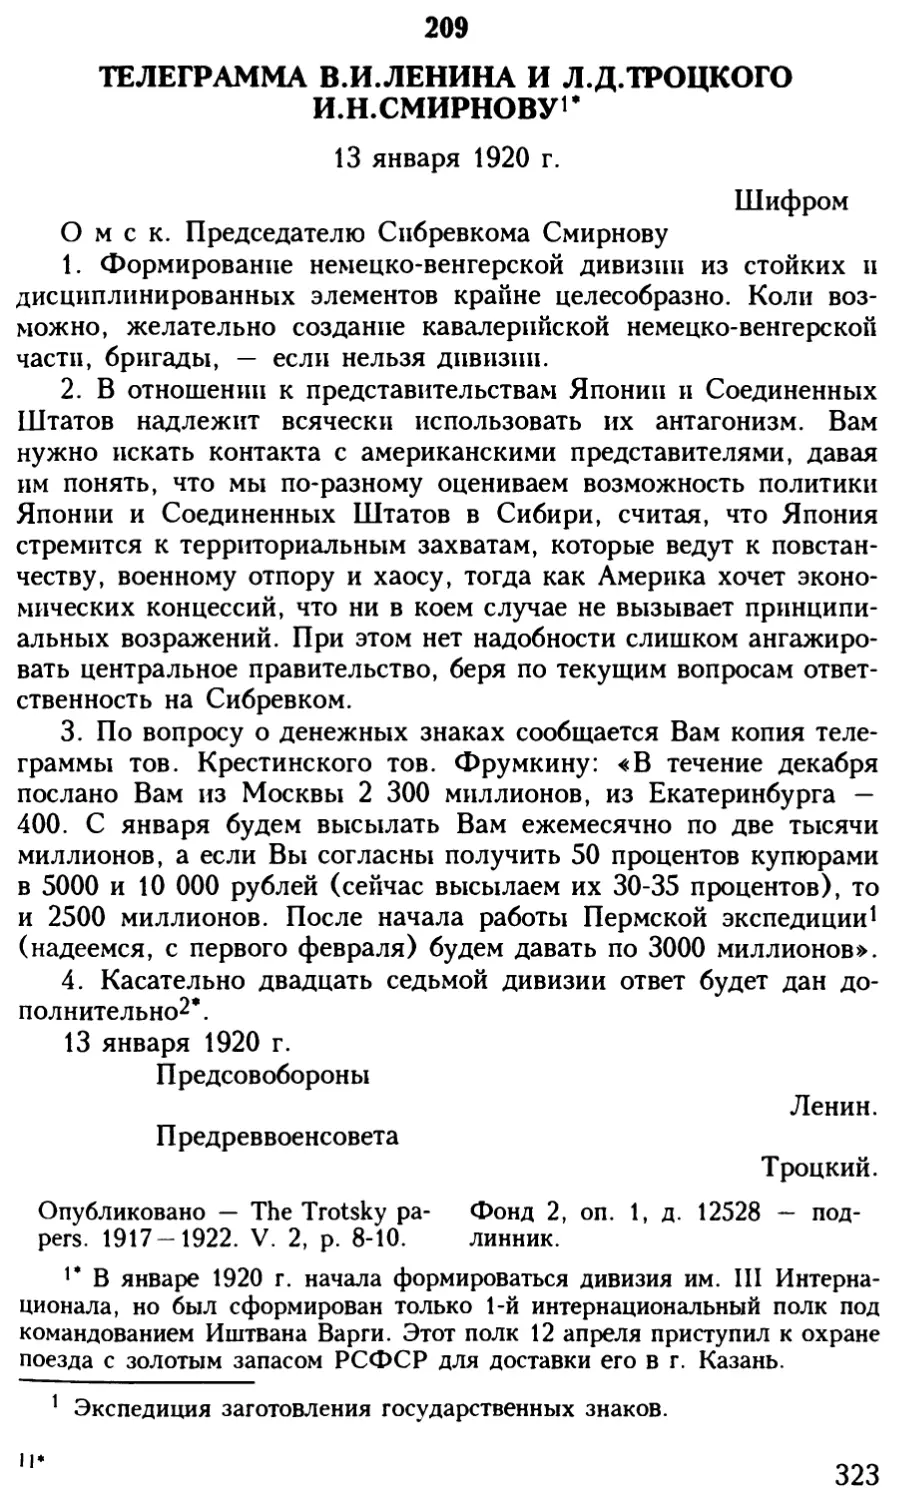 209. Телеграмма В.И.Ленина и Л.Д.Троцкого И.Н.Смирнову. 13 января 1920 г